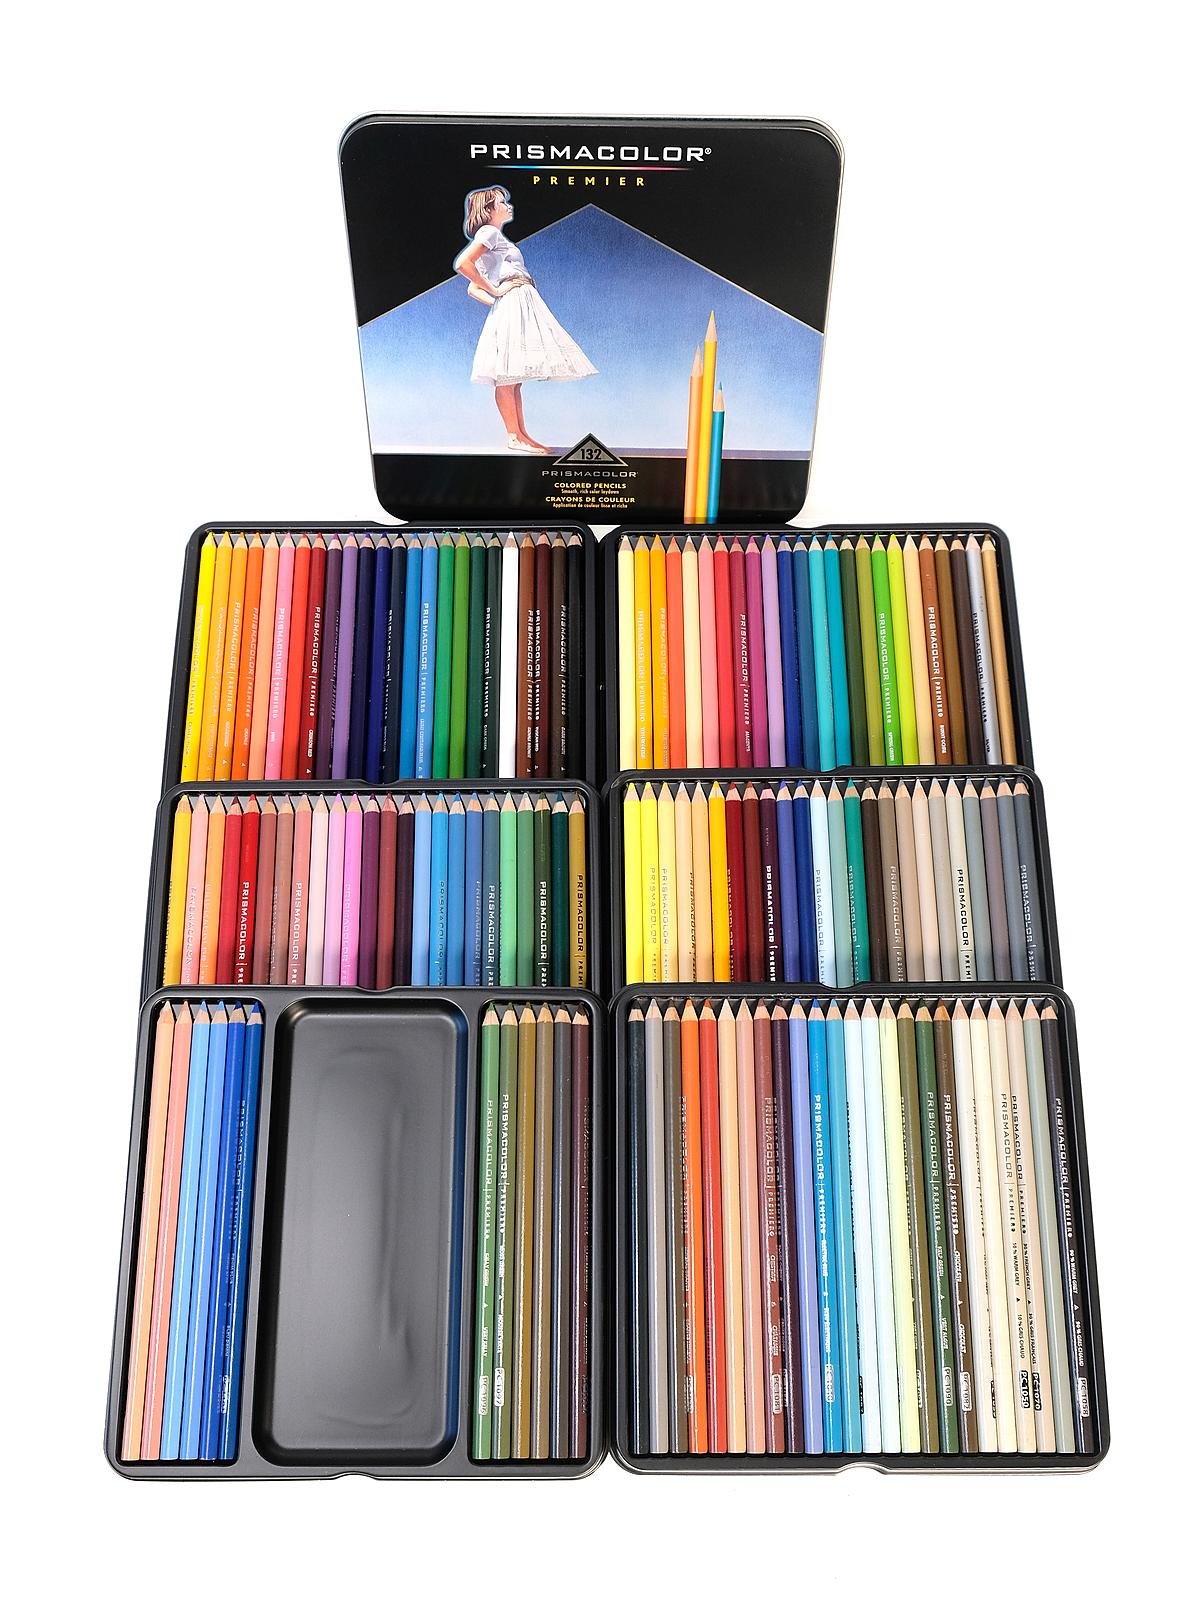 Prismacolor] Premier Soft Core Colored Pencils 132 Colored Pencils